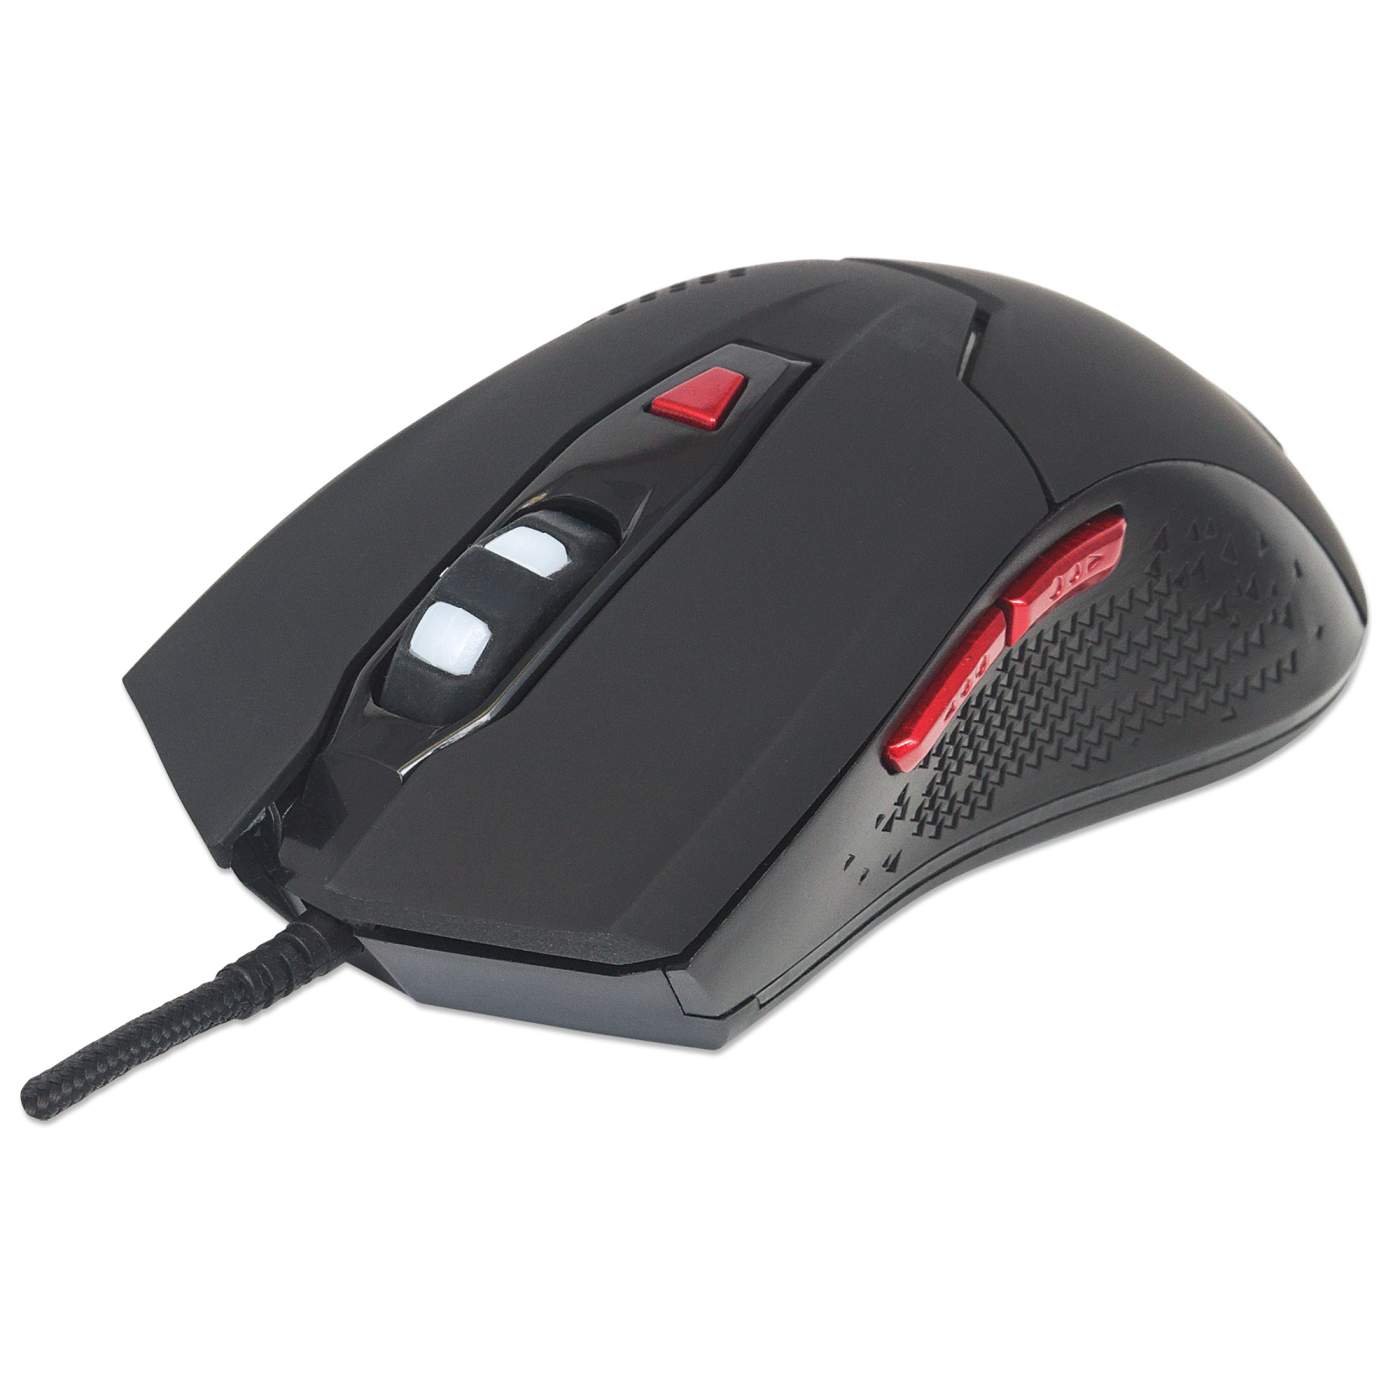 TECKNET Wired Gaming Mouse, 8000 DPI Adjustable Optical Sensor USB